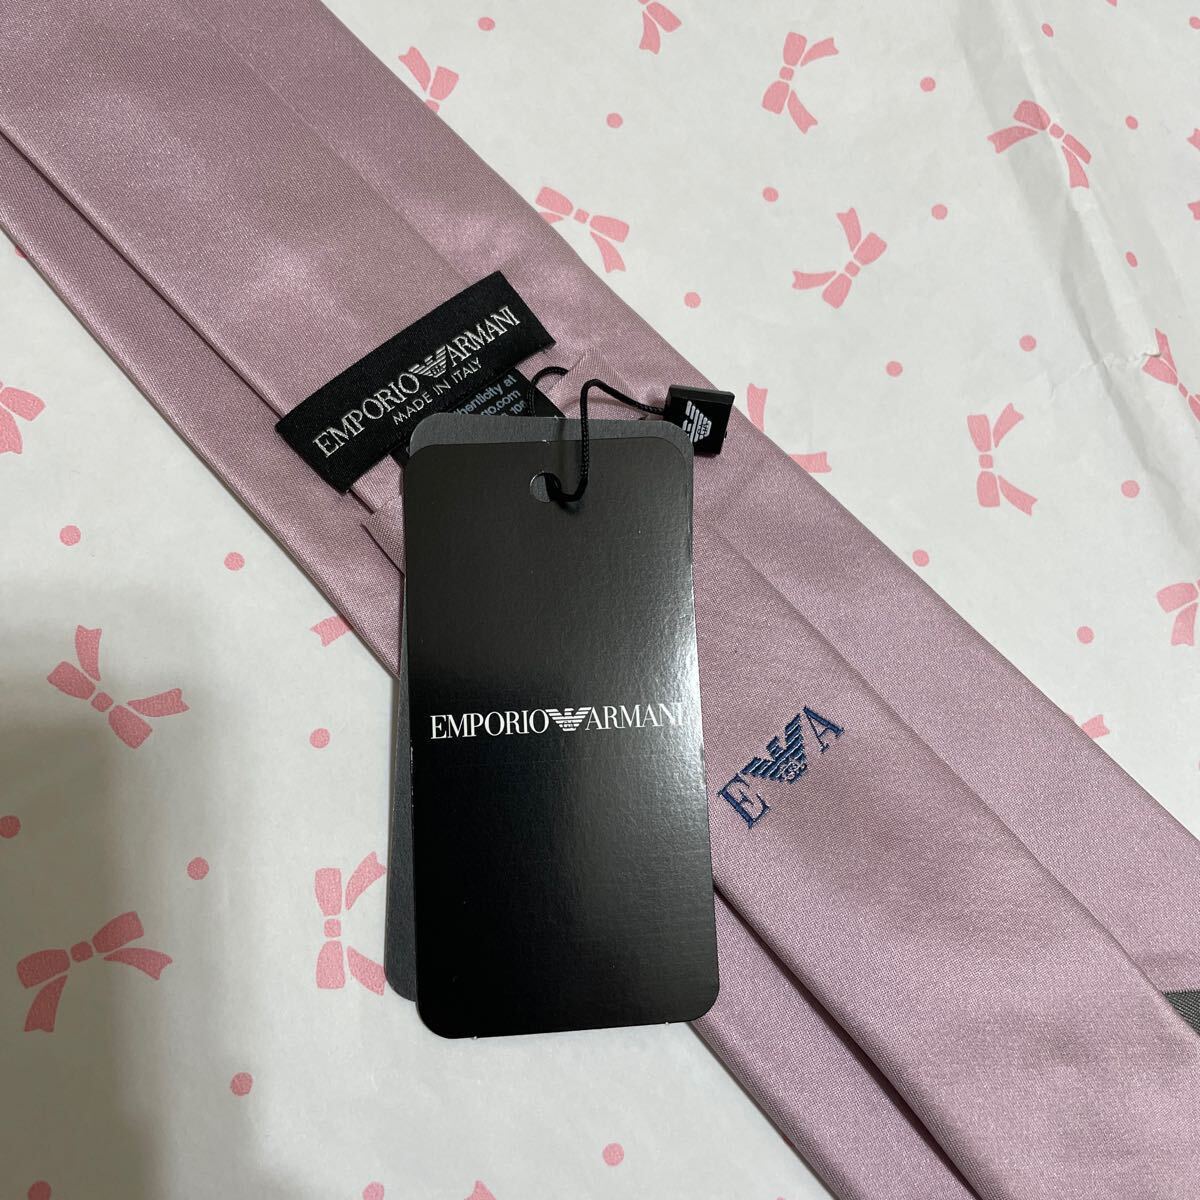  новый товар не использовался EMPORIO ARMANI Emporio Armani галстук розовый серия (1005)